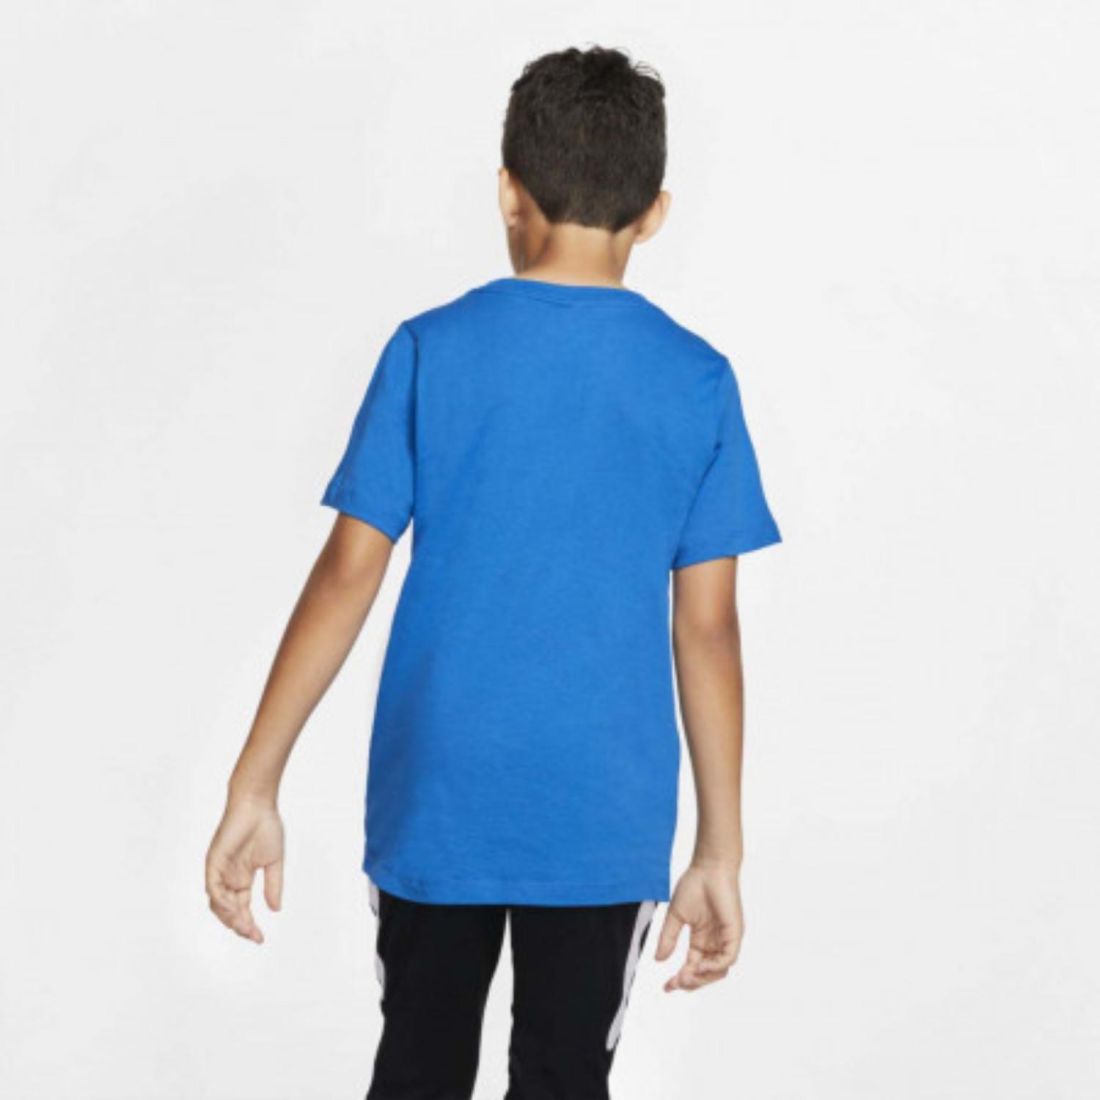 Стильная детская футболка Nike Inter Milan